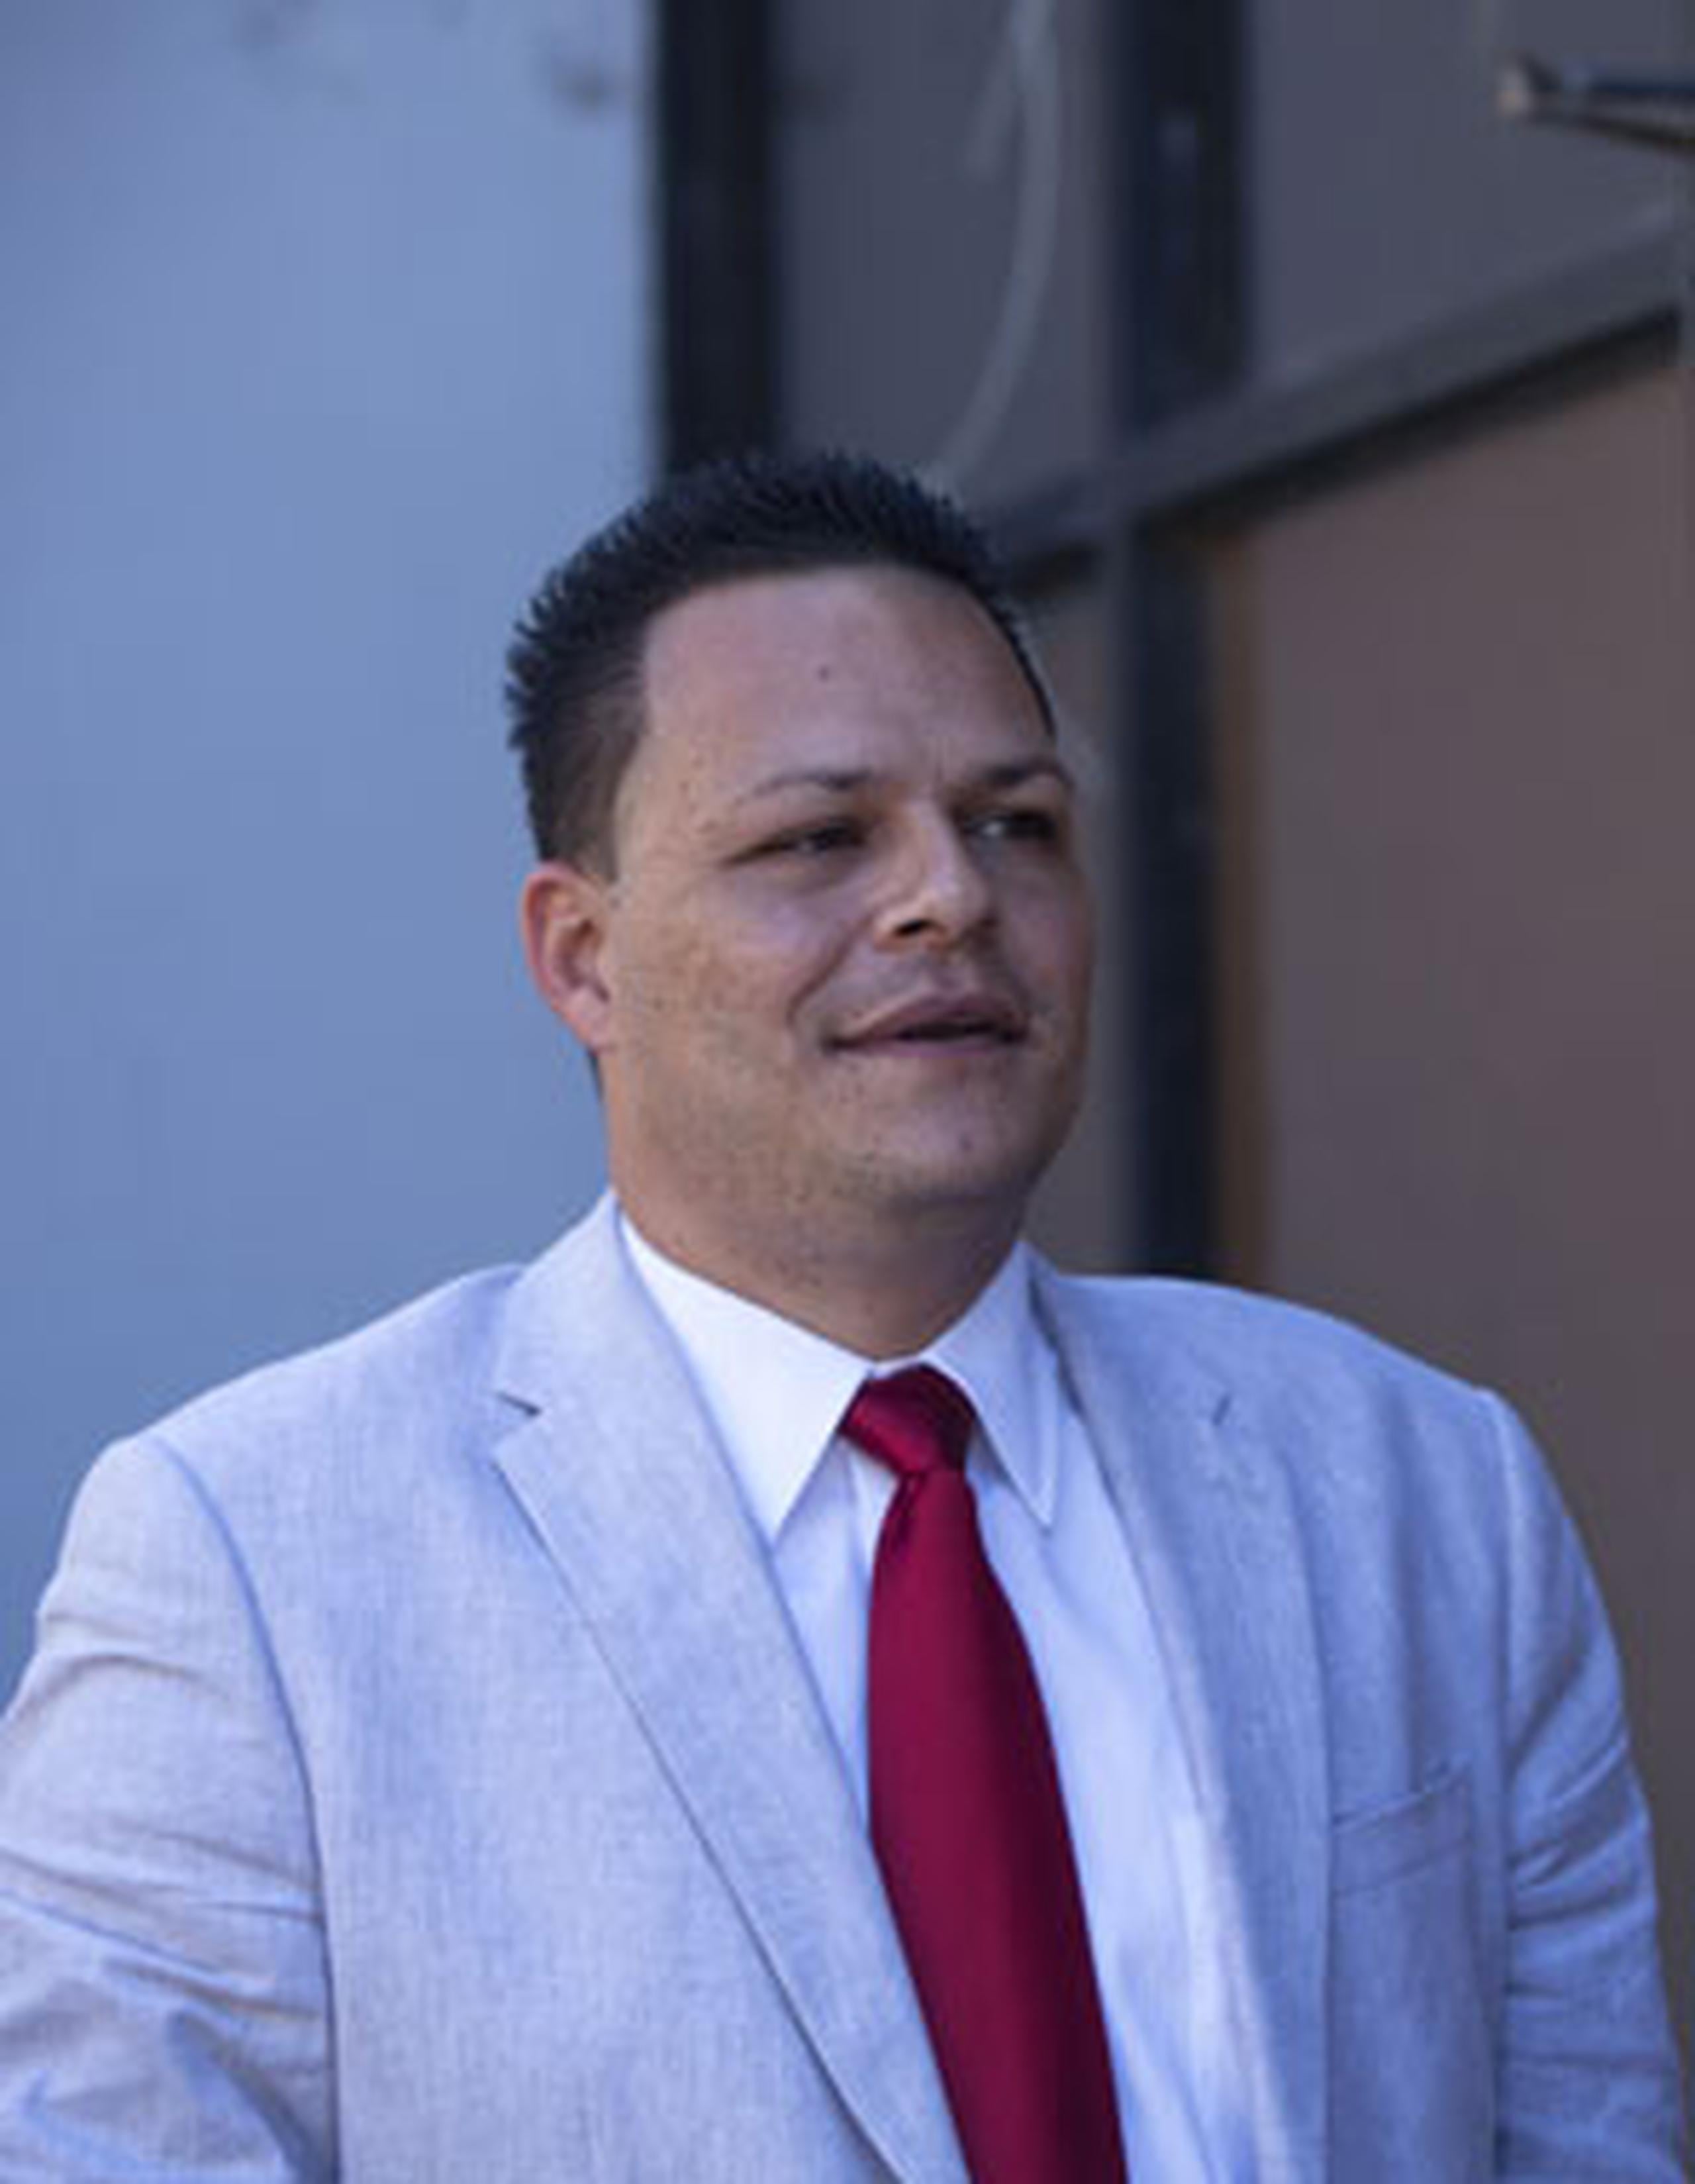 El alcalde de Ciales, Juan Rodríguez Pérez, podría ser encarcelado por desacato si no cumple con la orden de indemnizar y reinstalar a 13 de empleados municipales. (Archivo)